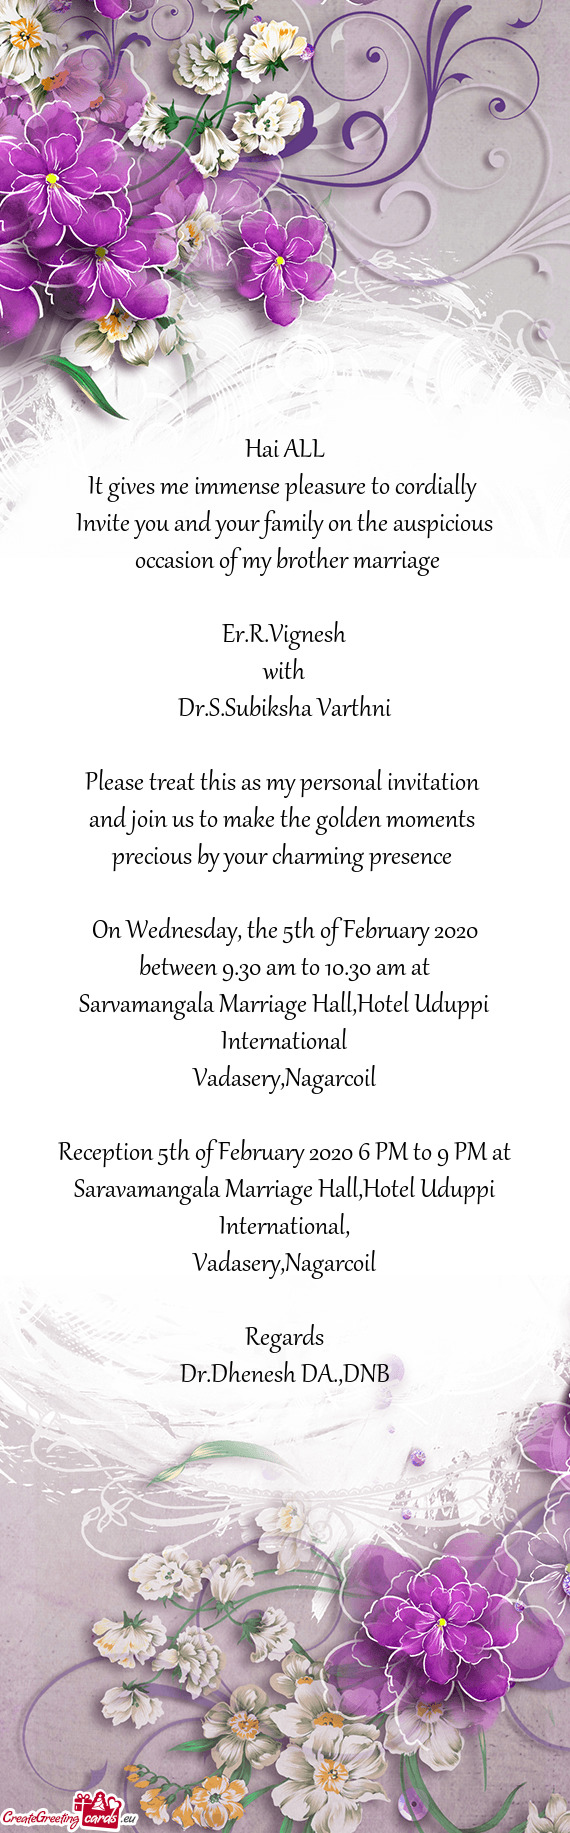 Sarvamangala Marriage Hall,Hotel Uduppi International